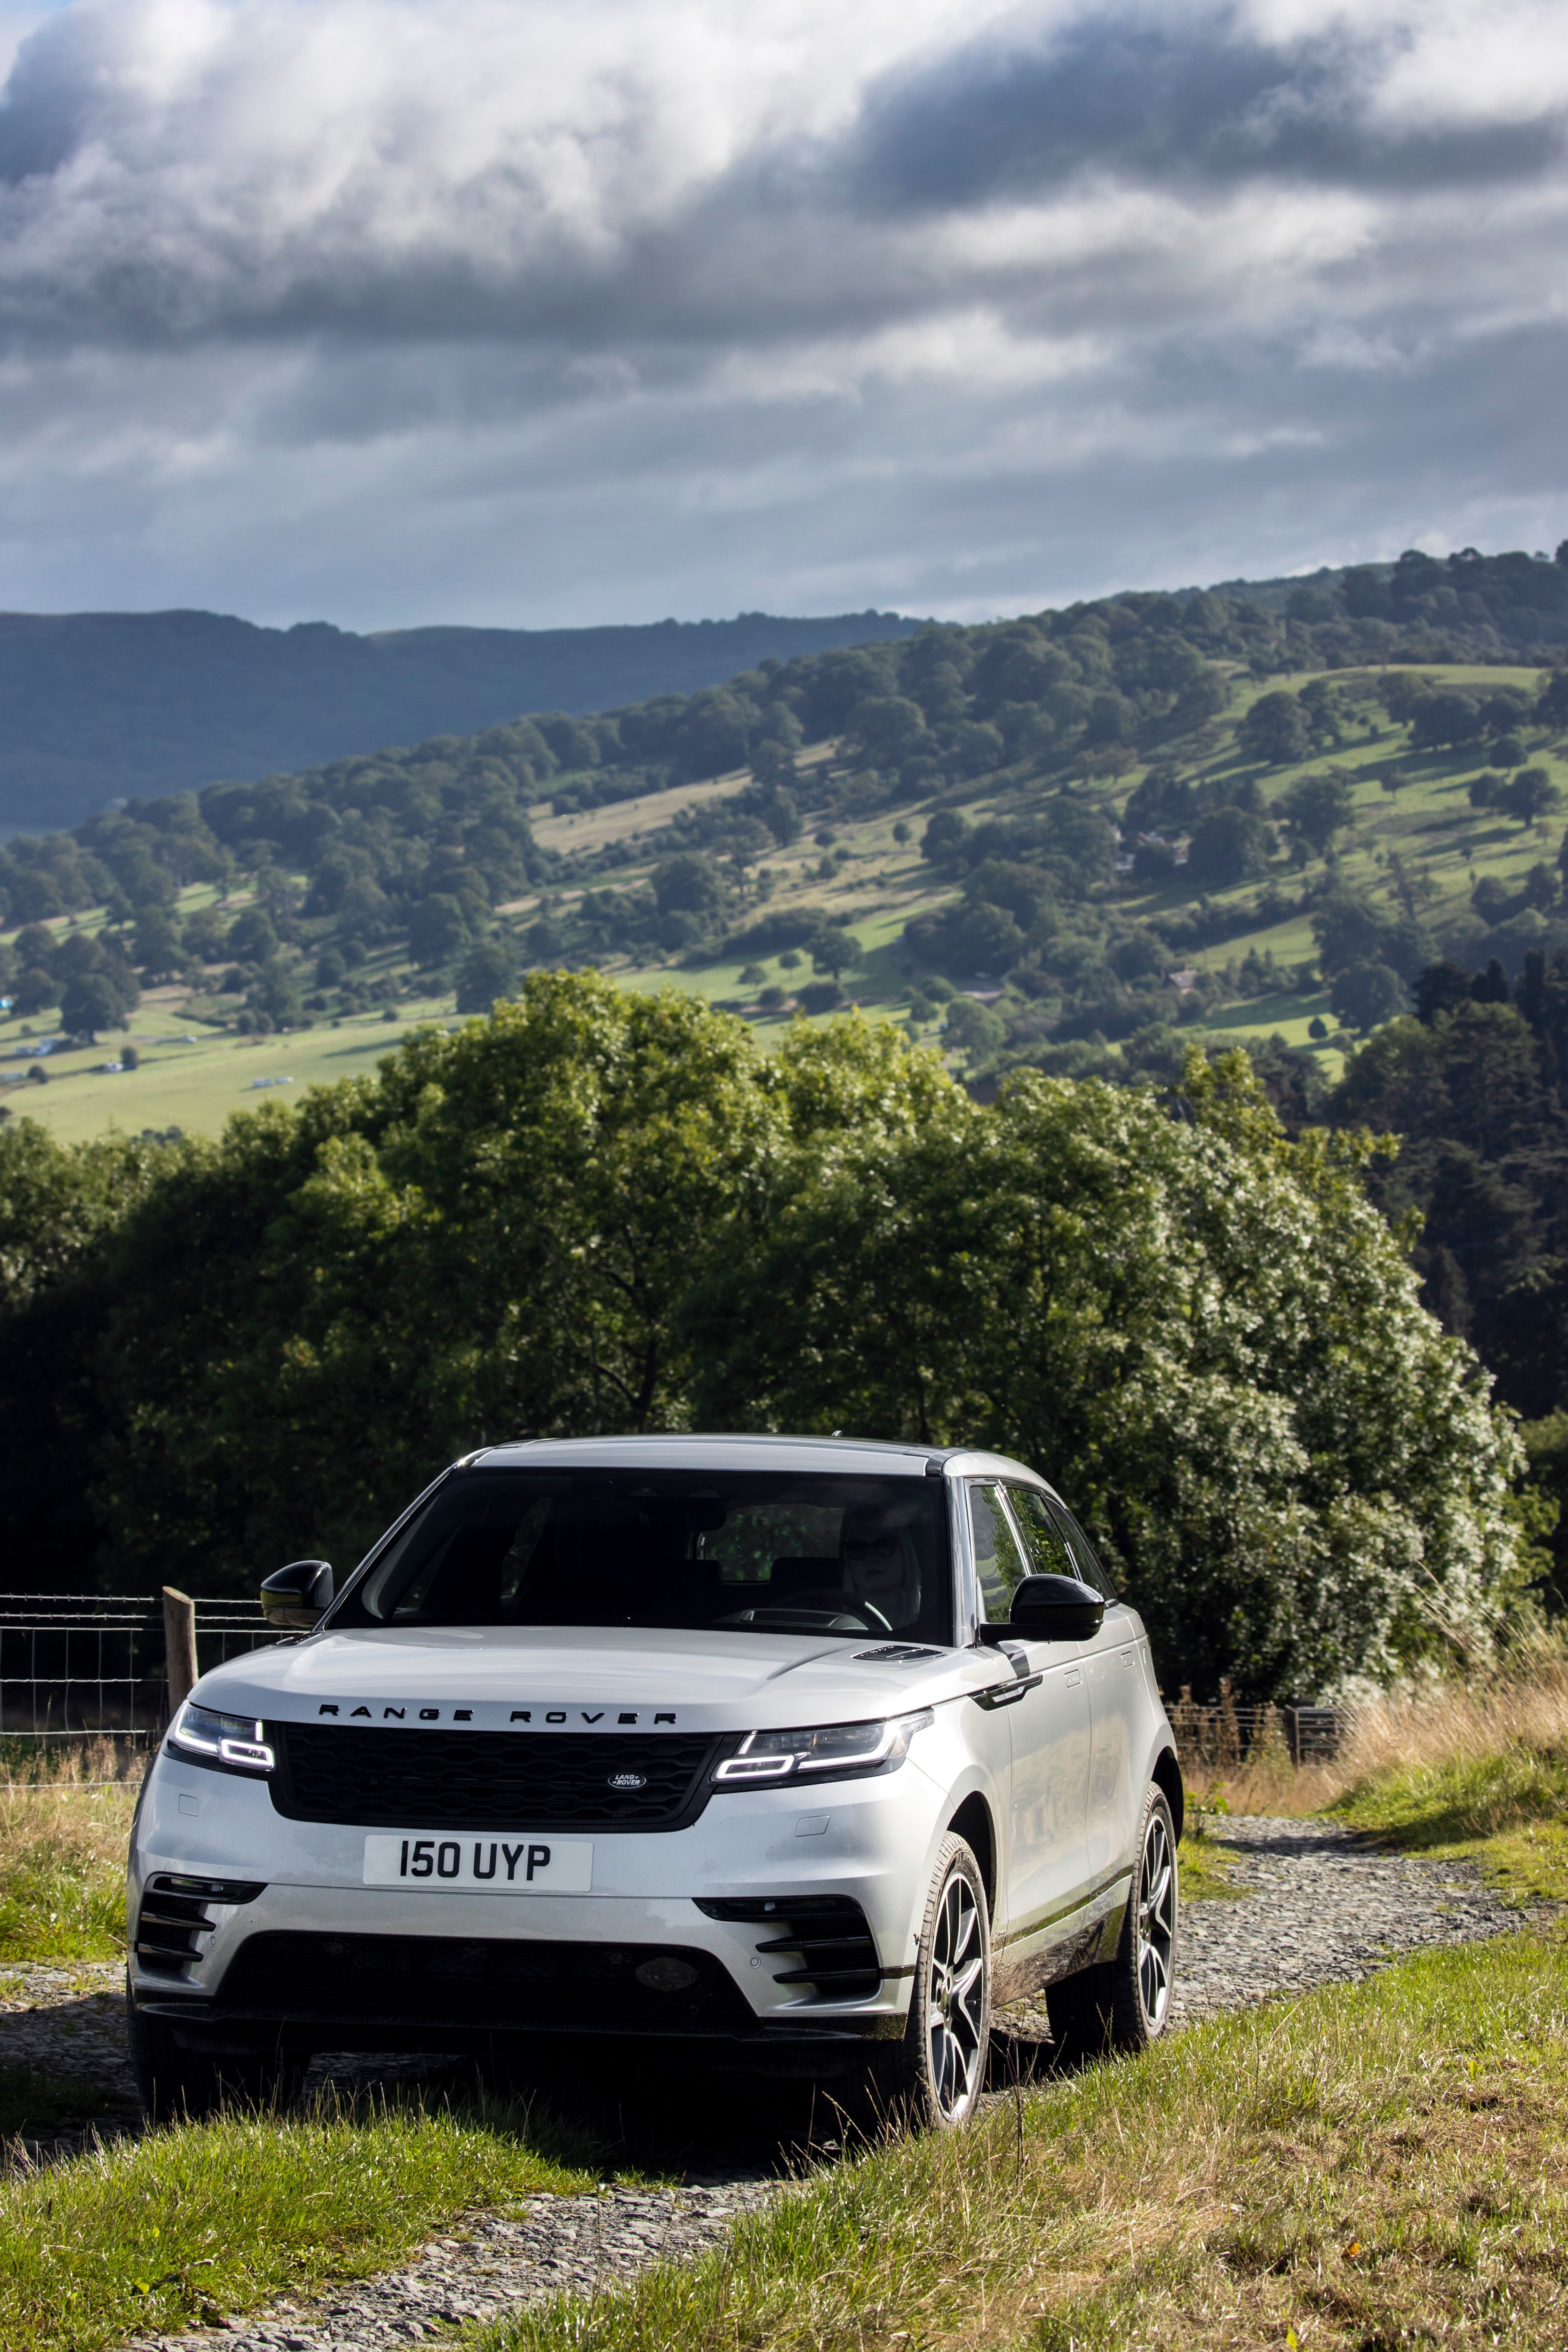 2021 Range Rover Velar Plug-In Hybrid